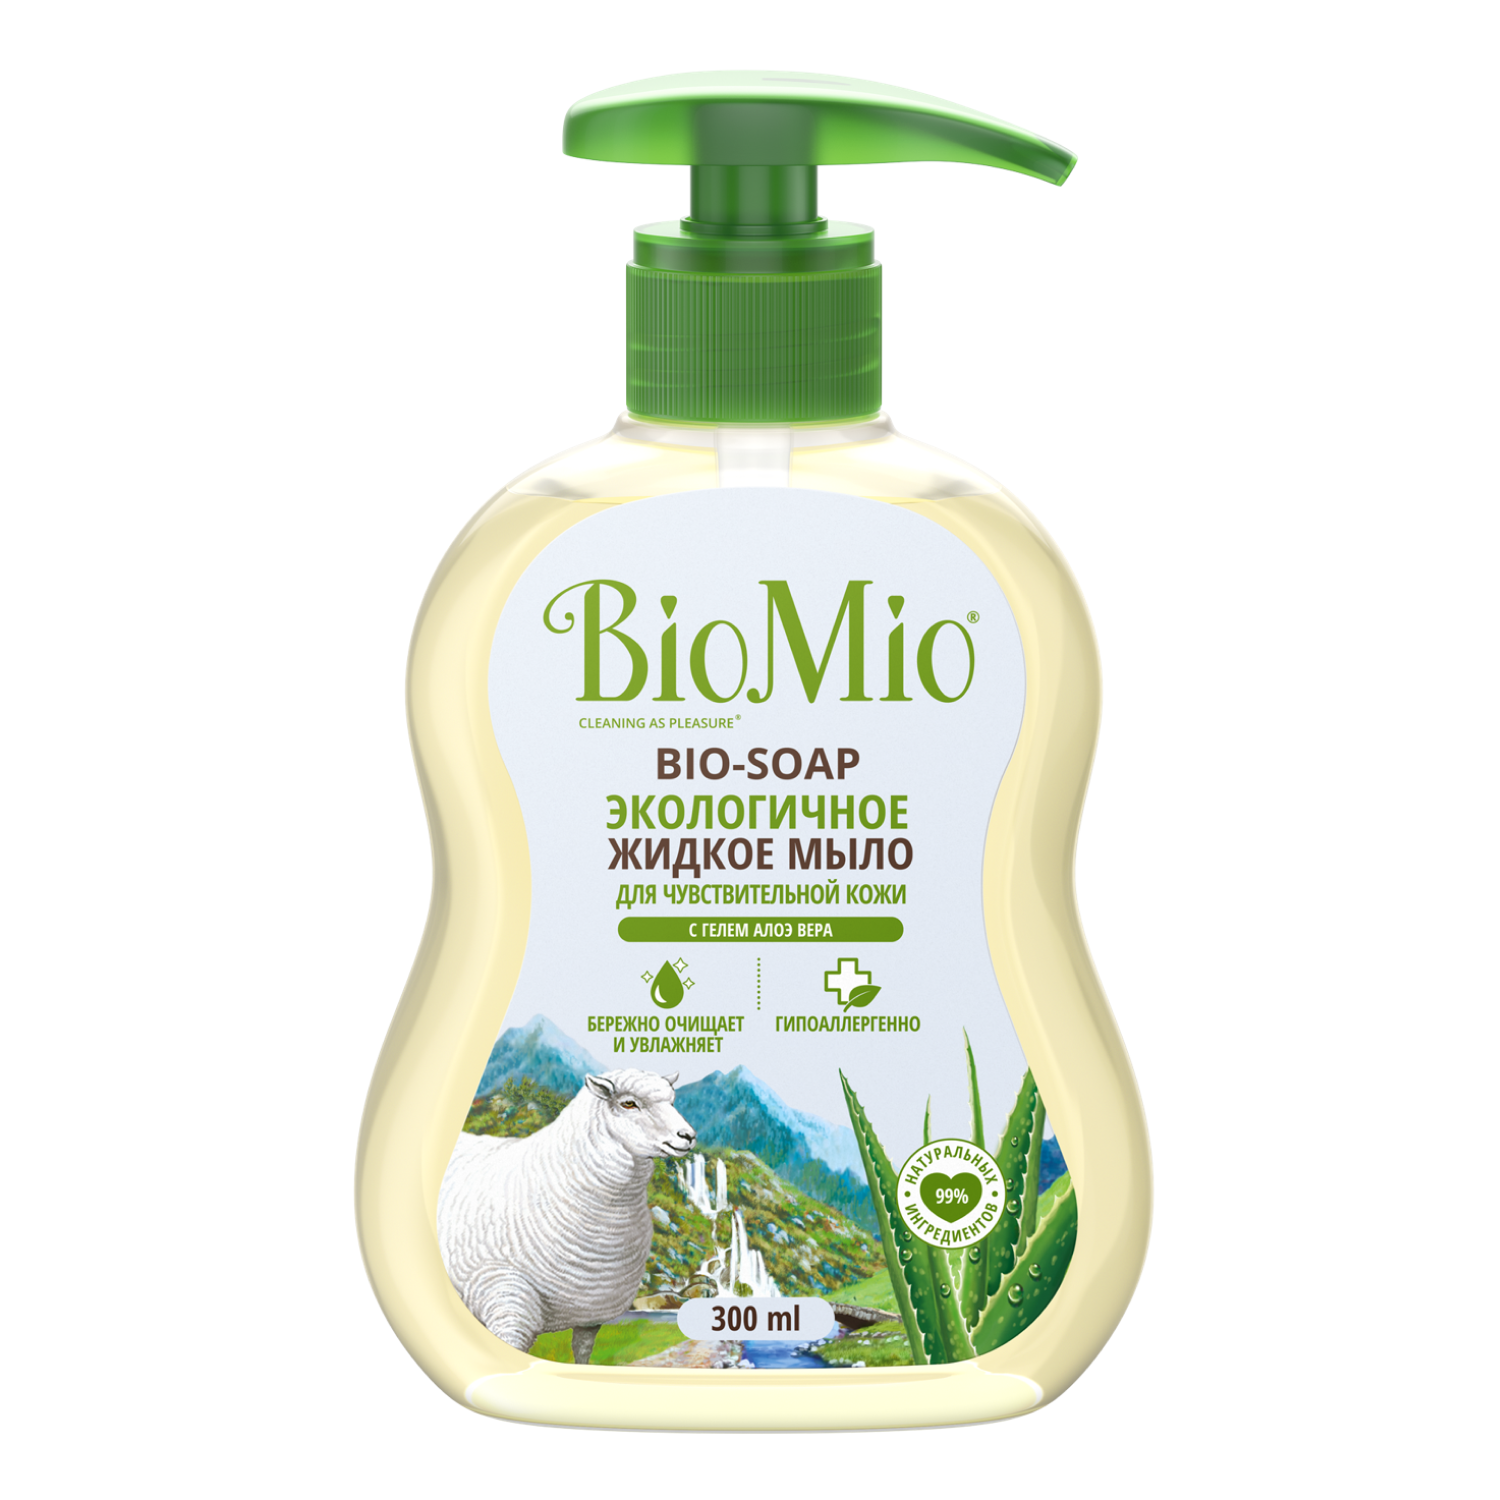 Мыло жидкое BioMio Bio-Soap с гелем алоэ вера 300мл - фото 8